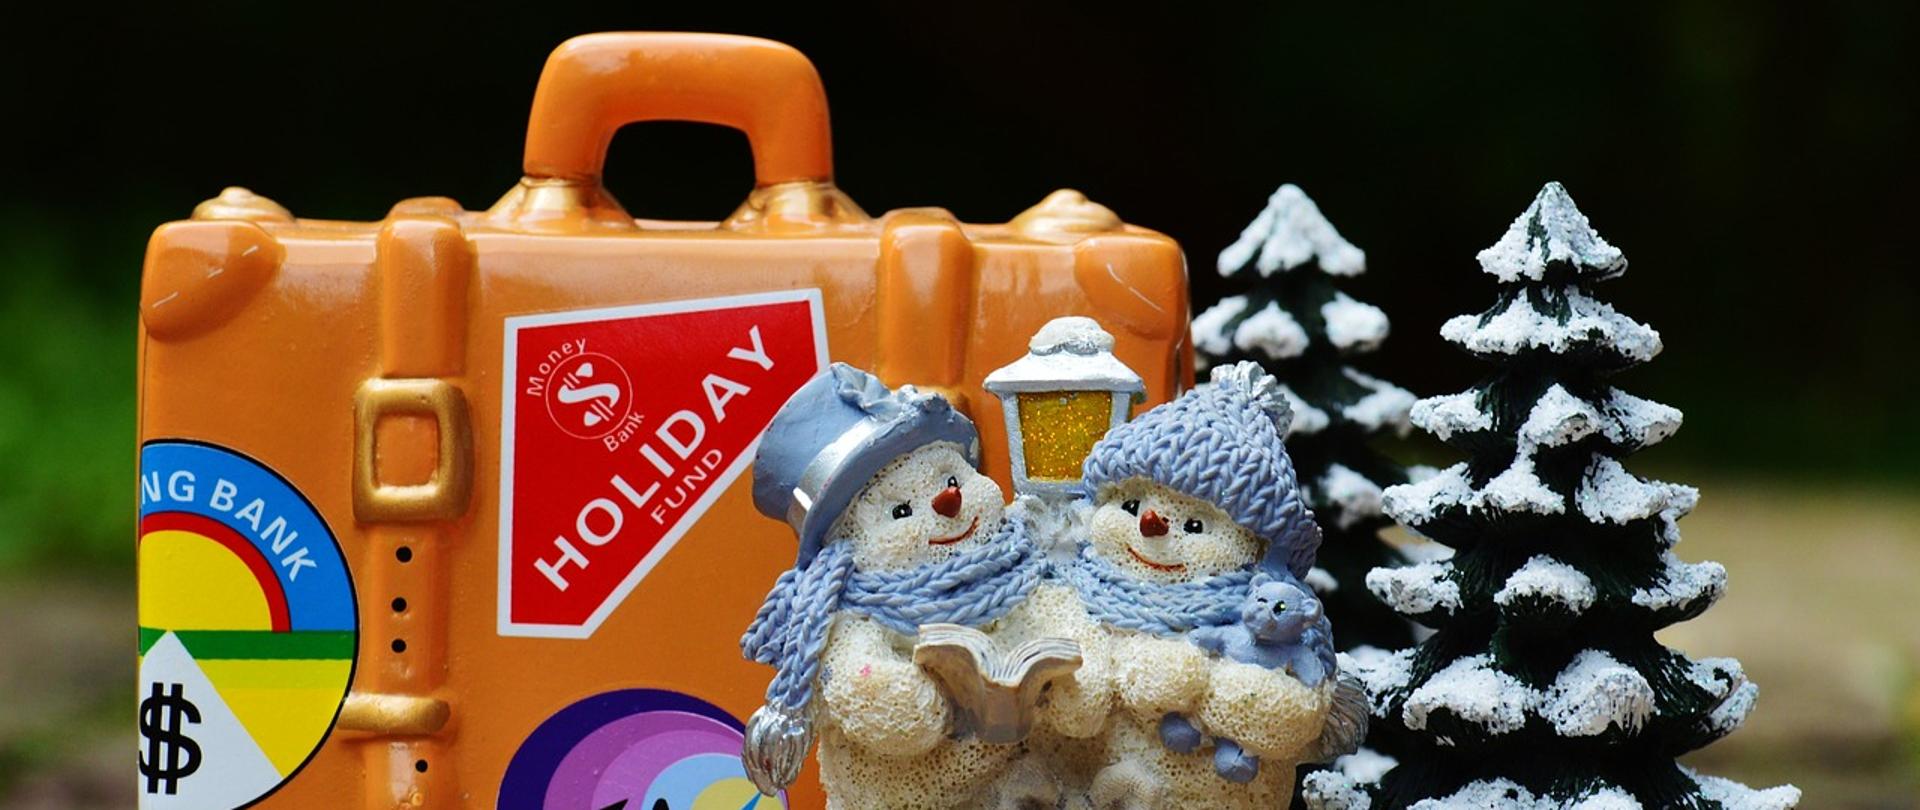 Przerwa świąteczne-zdjęcie przedstawia figurki bałwanków śnieżnych, ośnieżone drzewa i pomarańczową walizkę